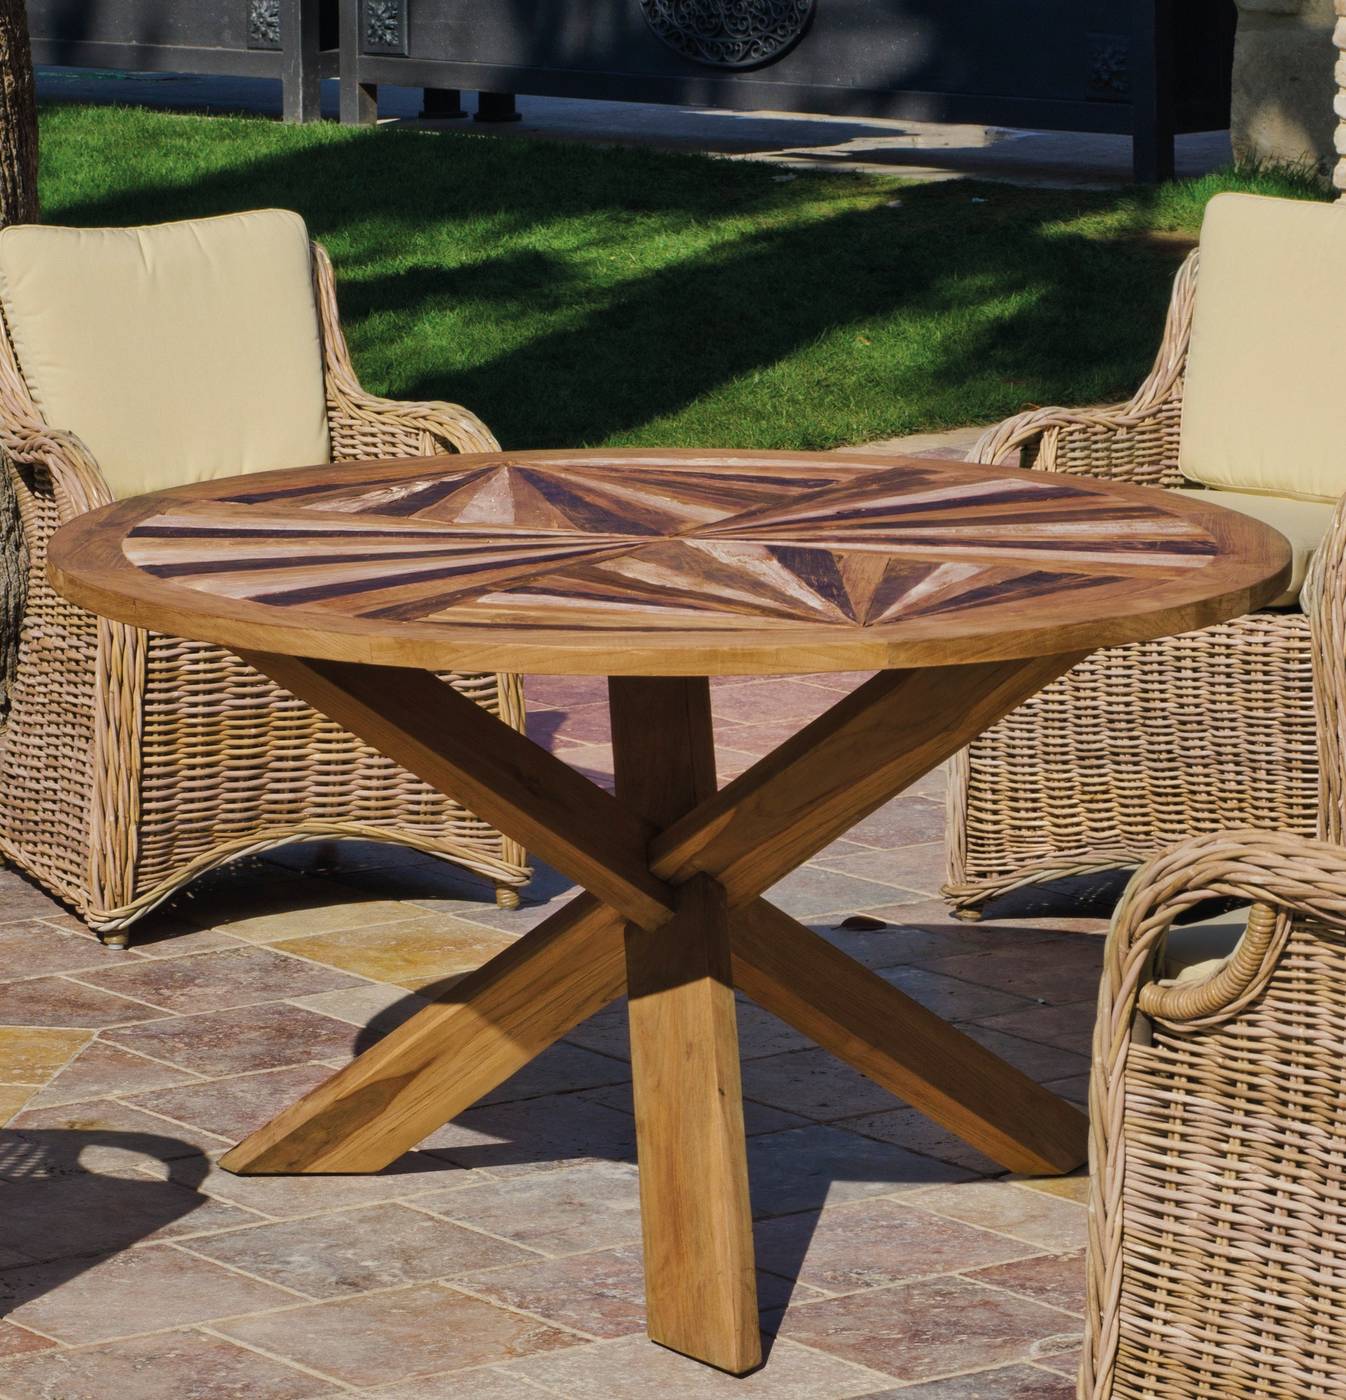 Set Madera Teka Richmond-140 - Conjunto para jardín fabricado sólo con materiales naturales: 4 sillones con cojines de ratán natural y mesa de madera de teka de 140 cm